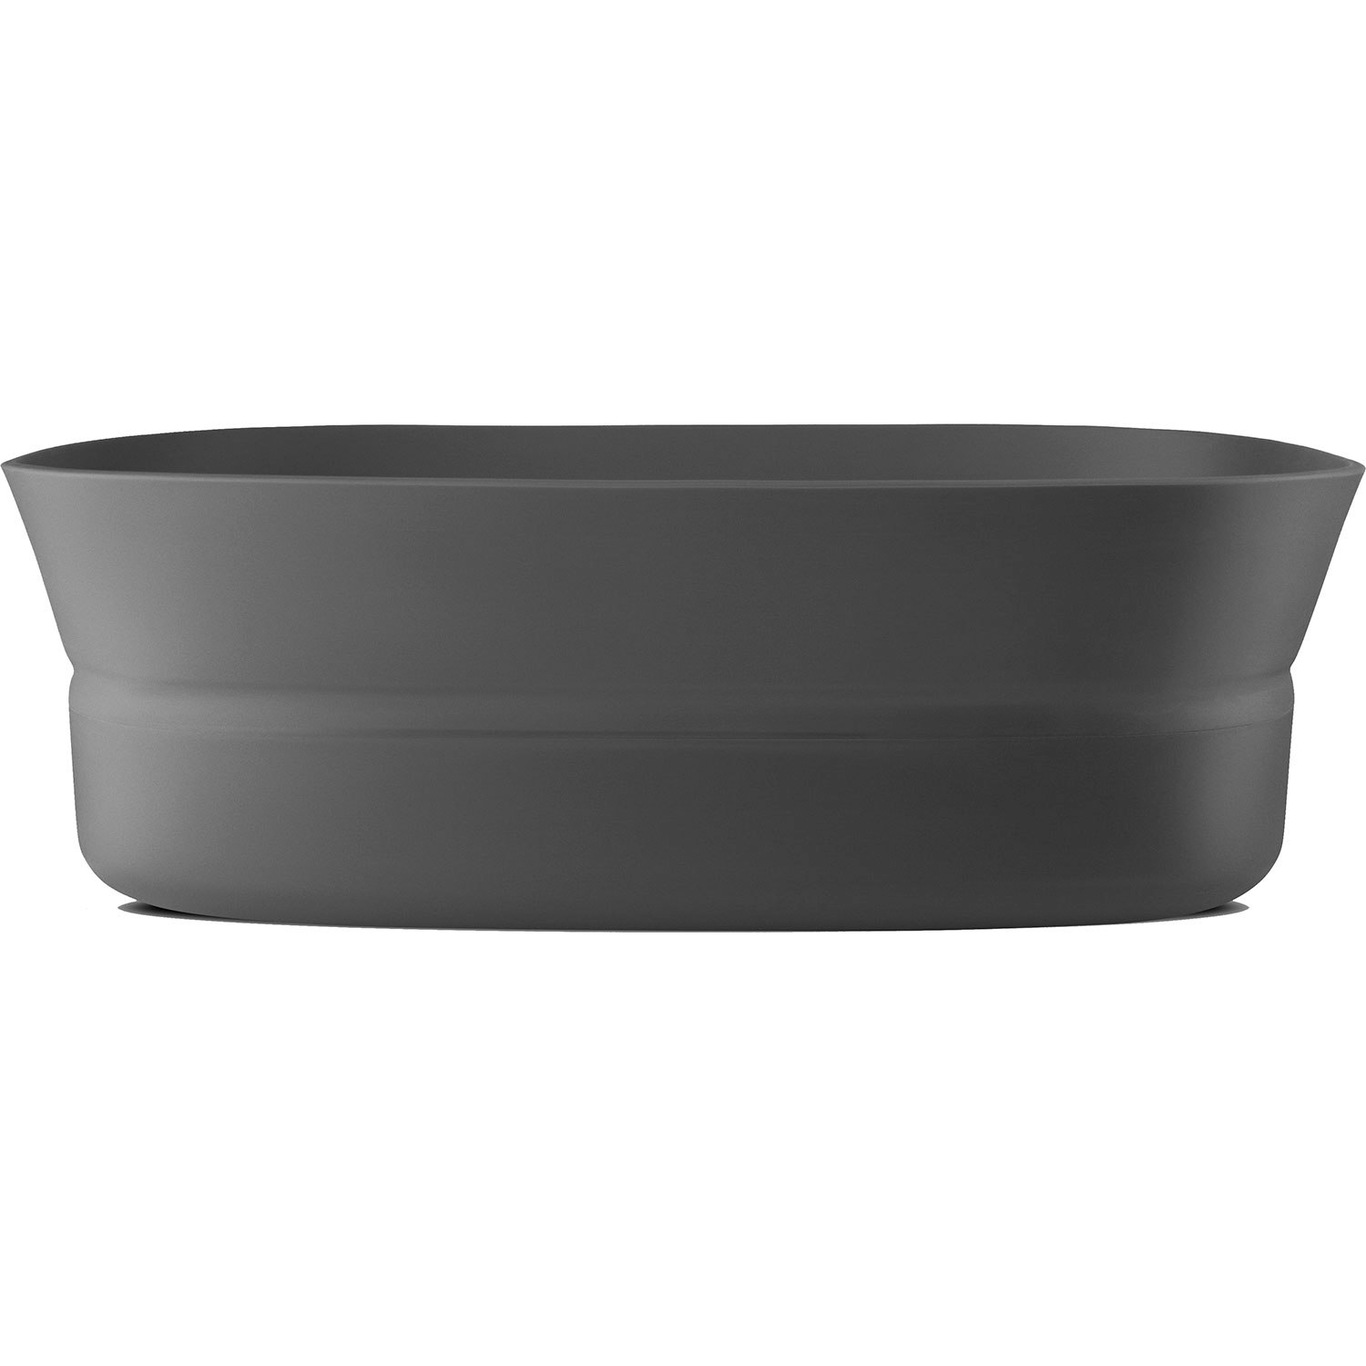 Cook & Serve Ovenproof Bowl Large, Green - RIG-TIG @ RoyalDesign